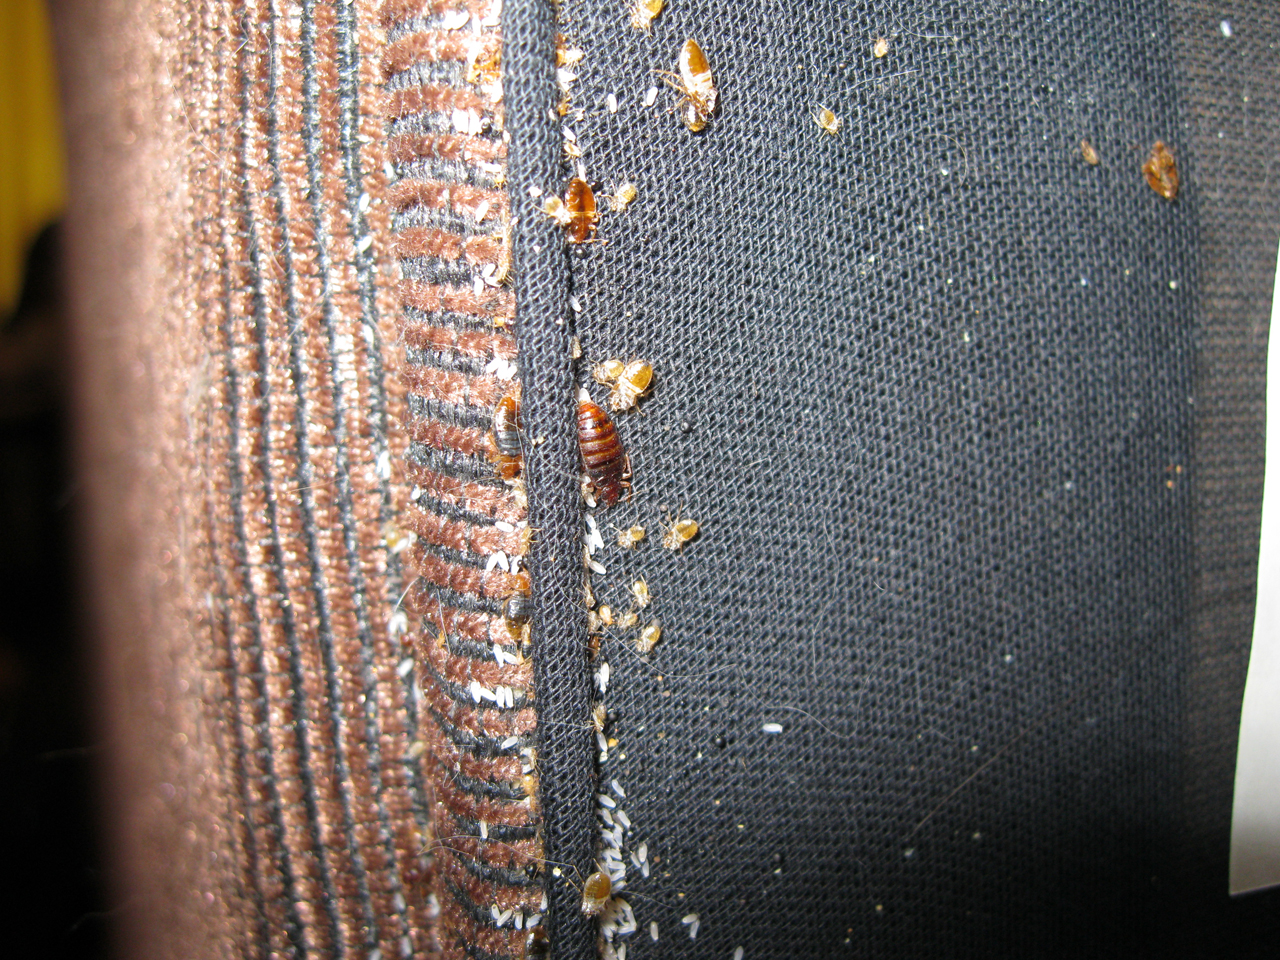 Bed bug infestation in furniture